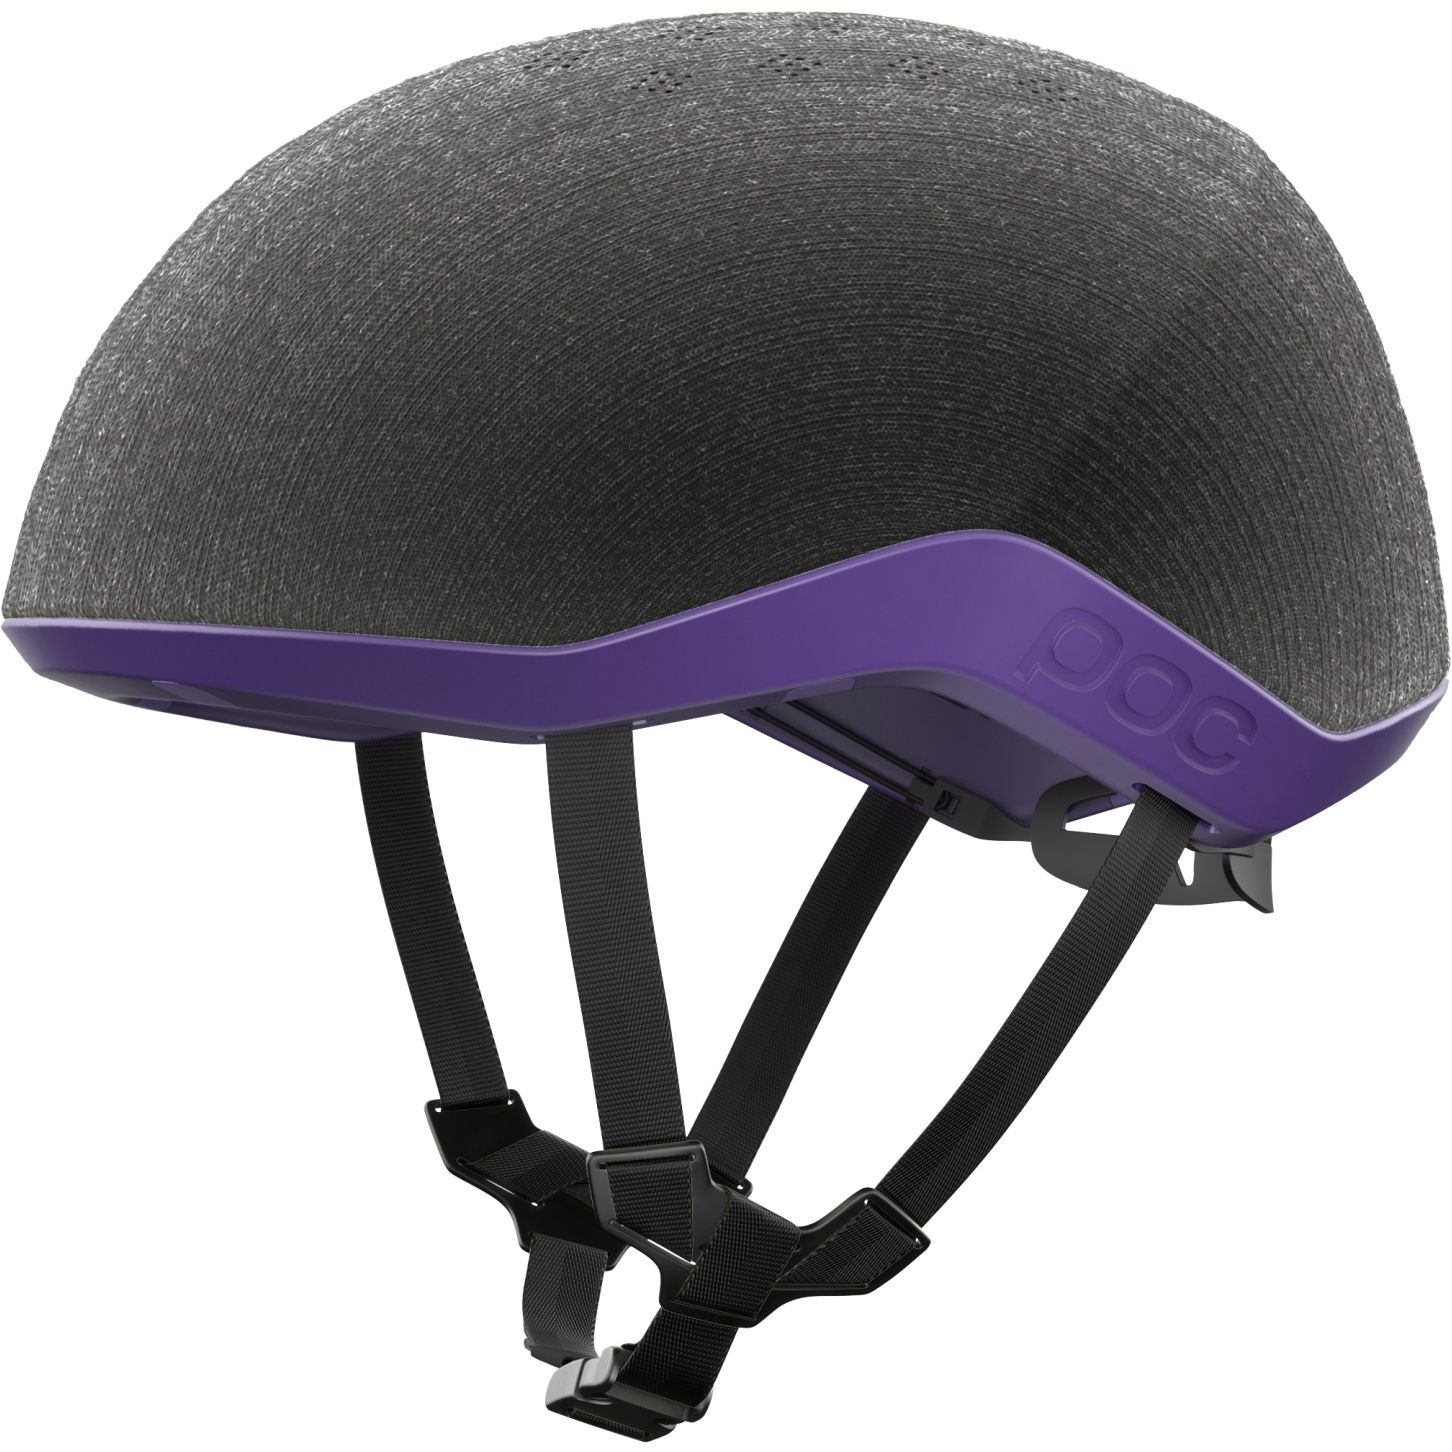 Image of POC Myelin Helmet - 1611 sapphire purple